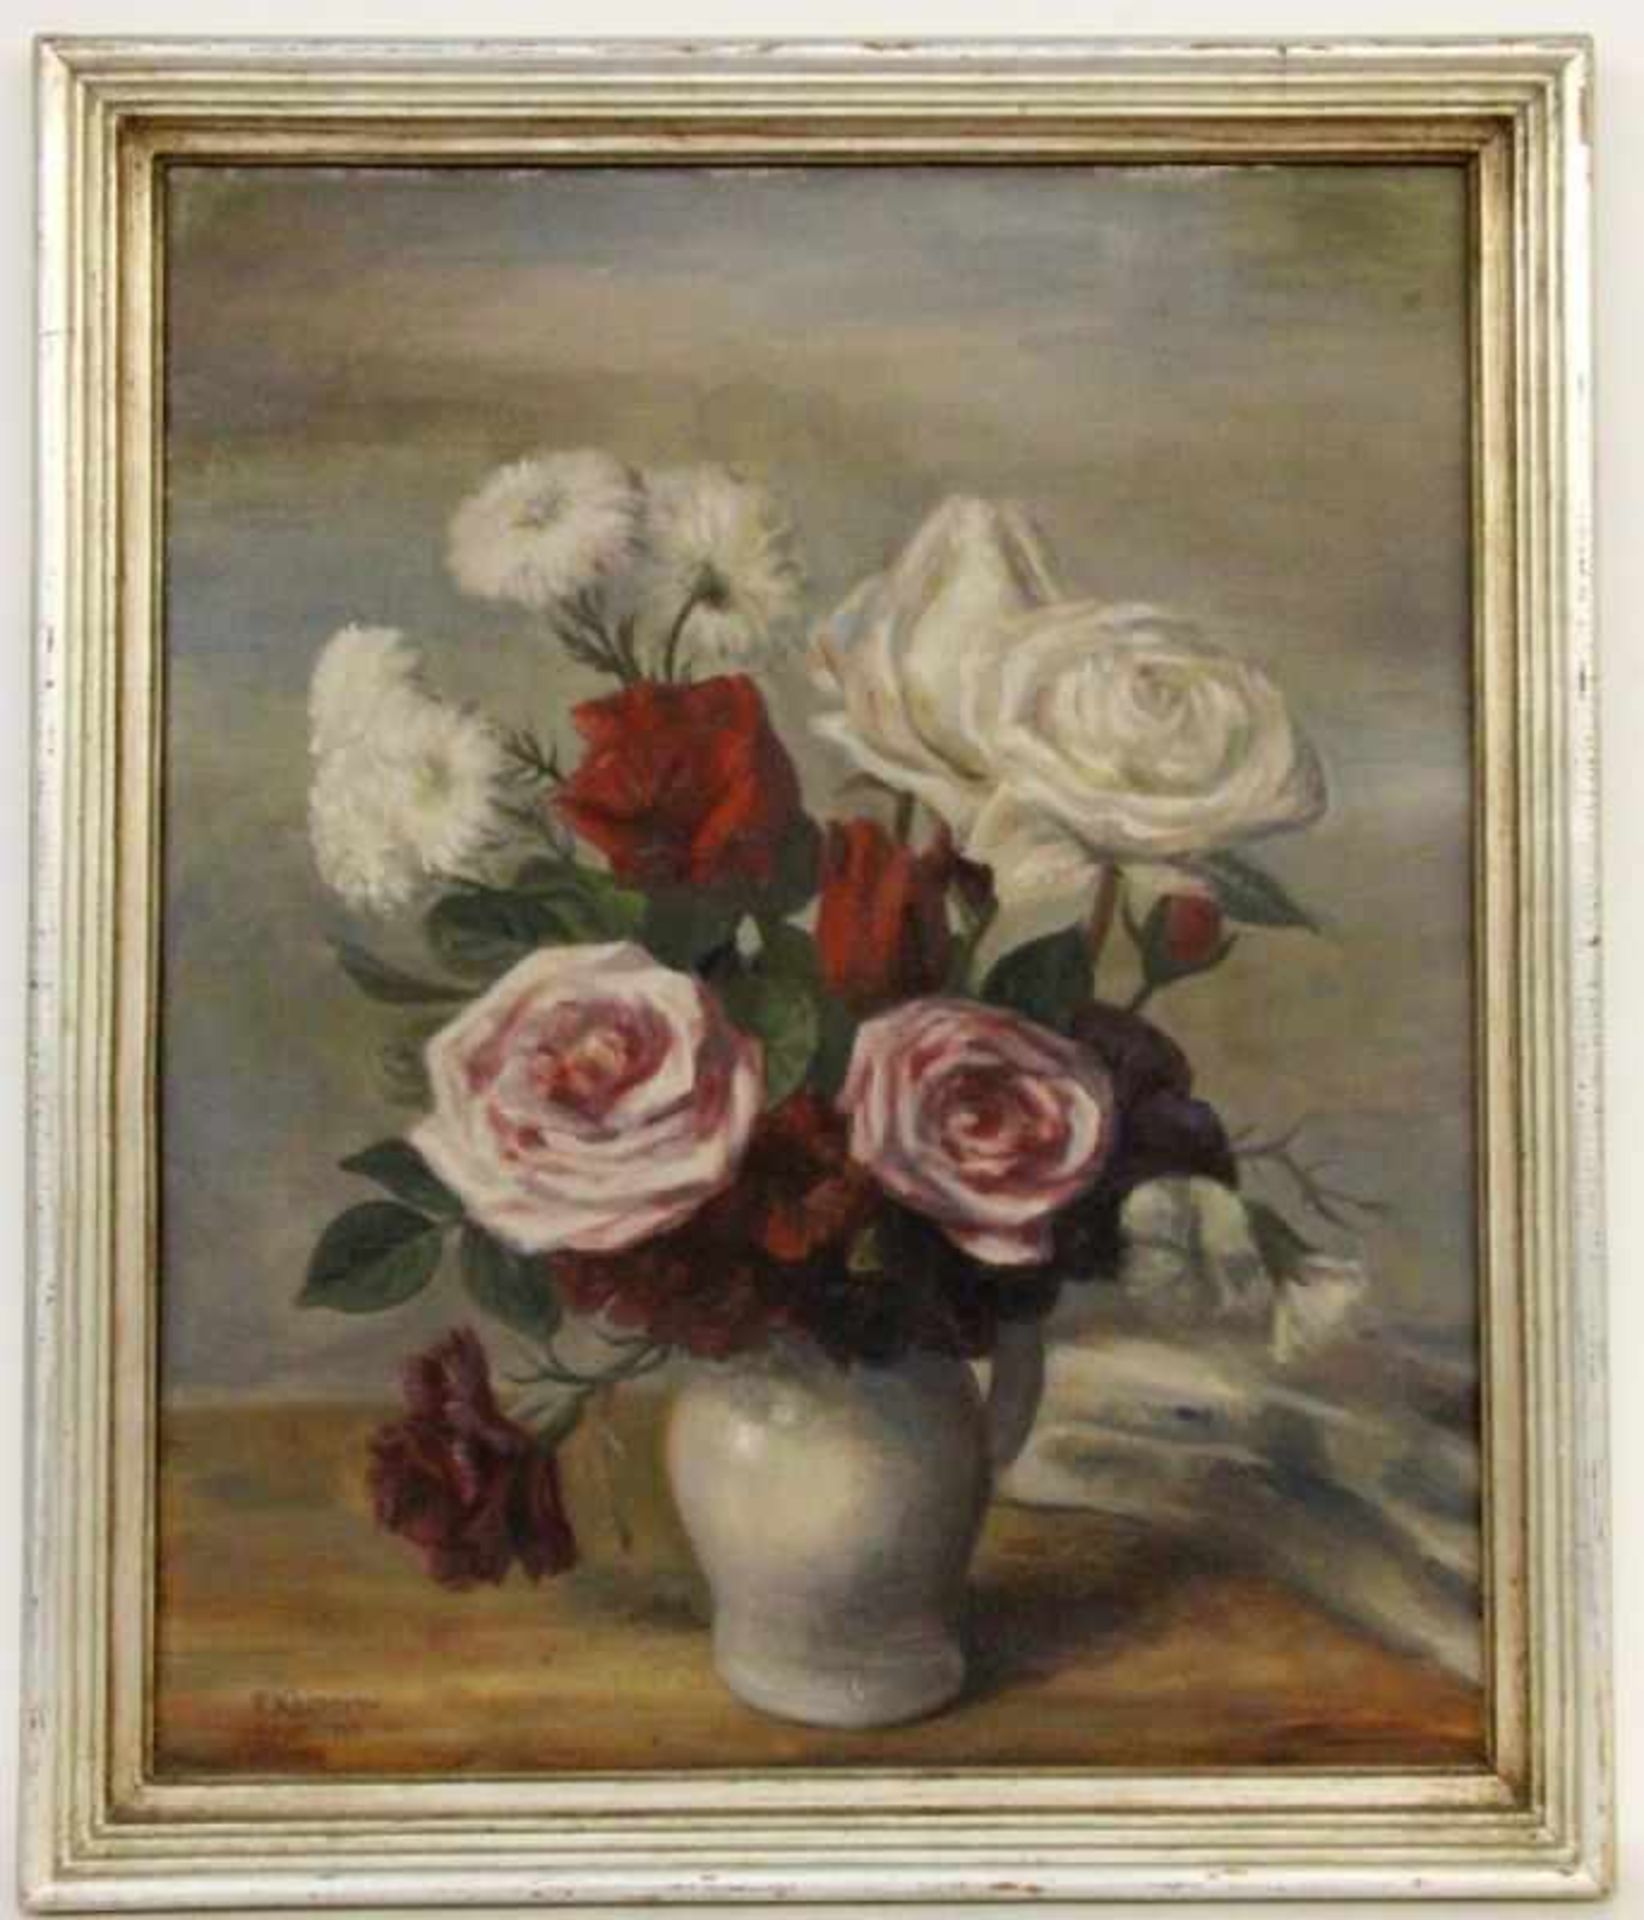 KÄLBERER, PAUL Stuttgart 1896 - 1974 Glatt Flowers in the Vase. Oil on canvas, signed anddated: